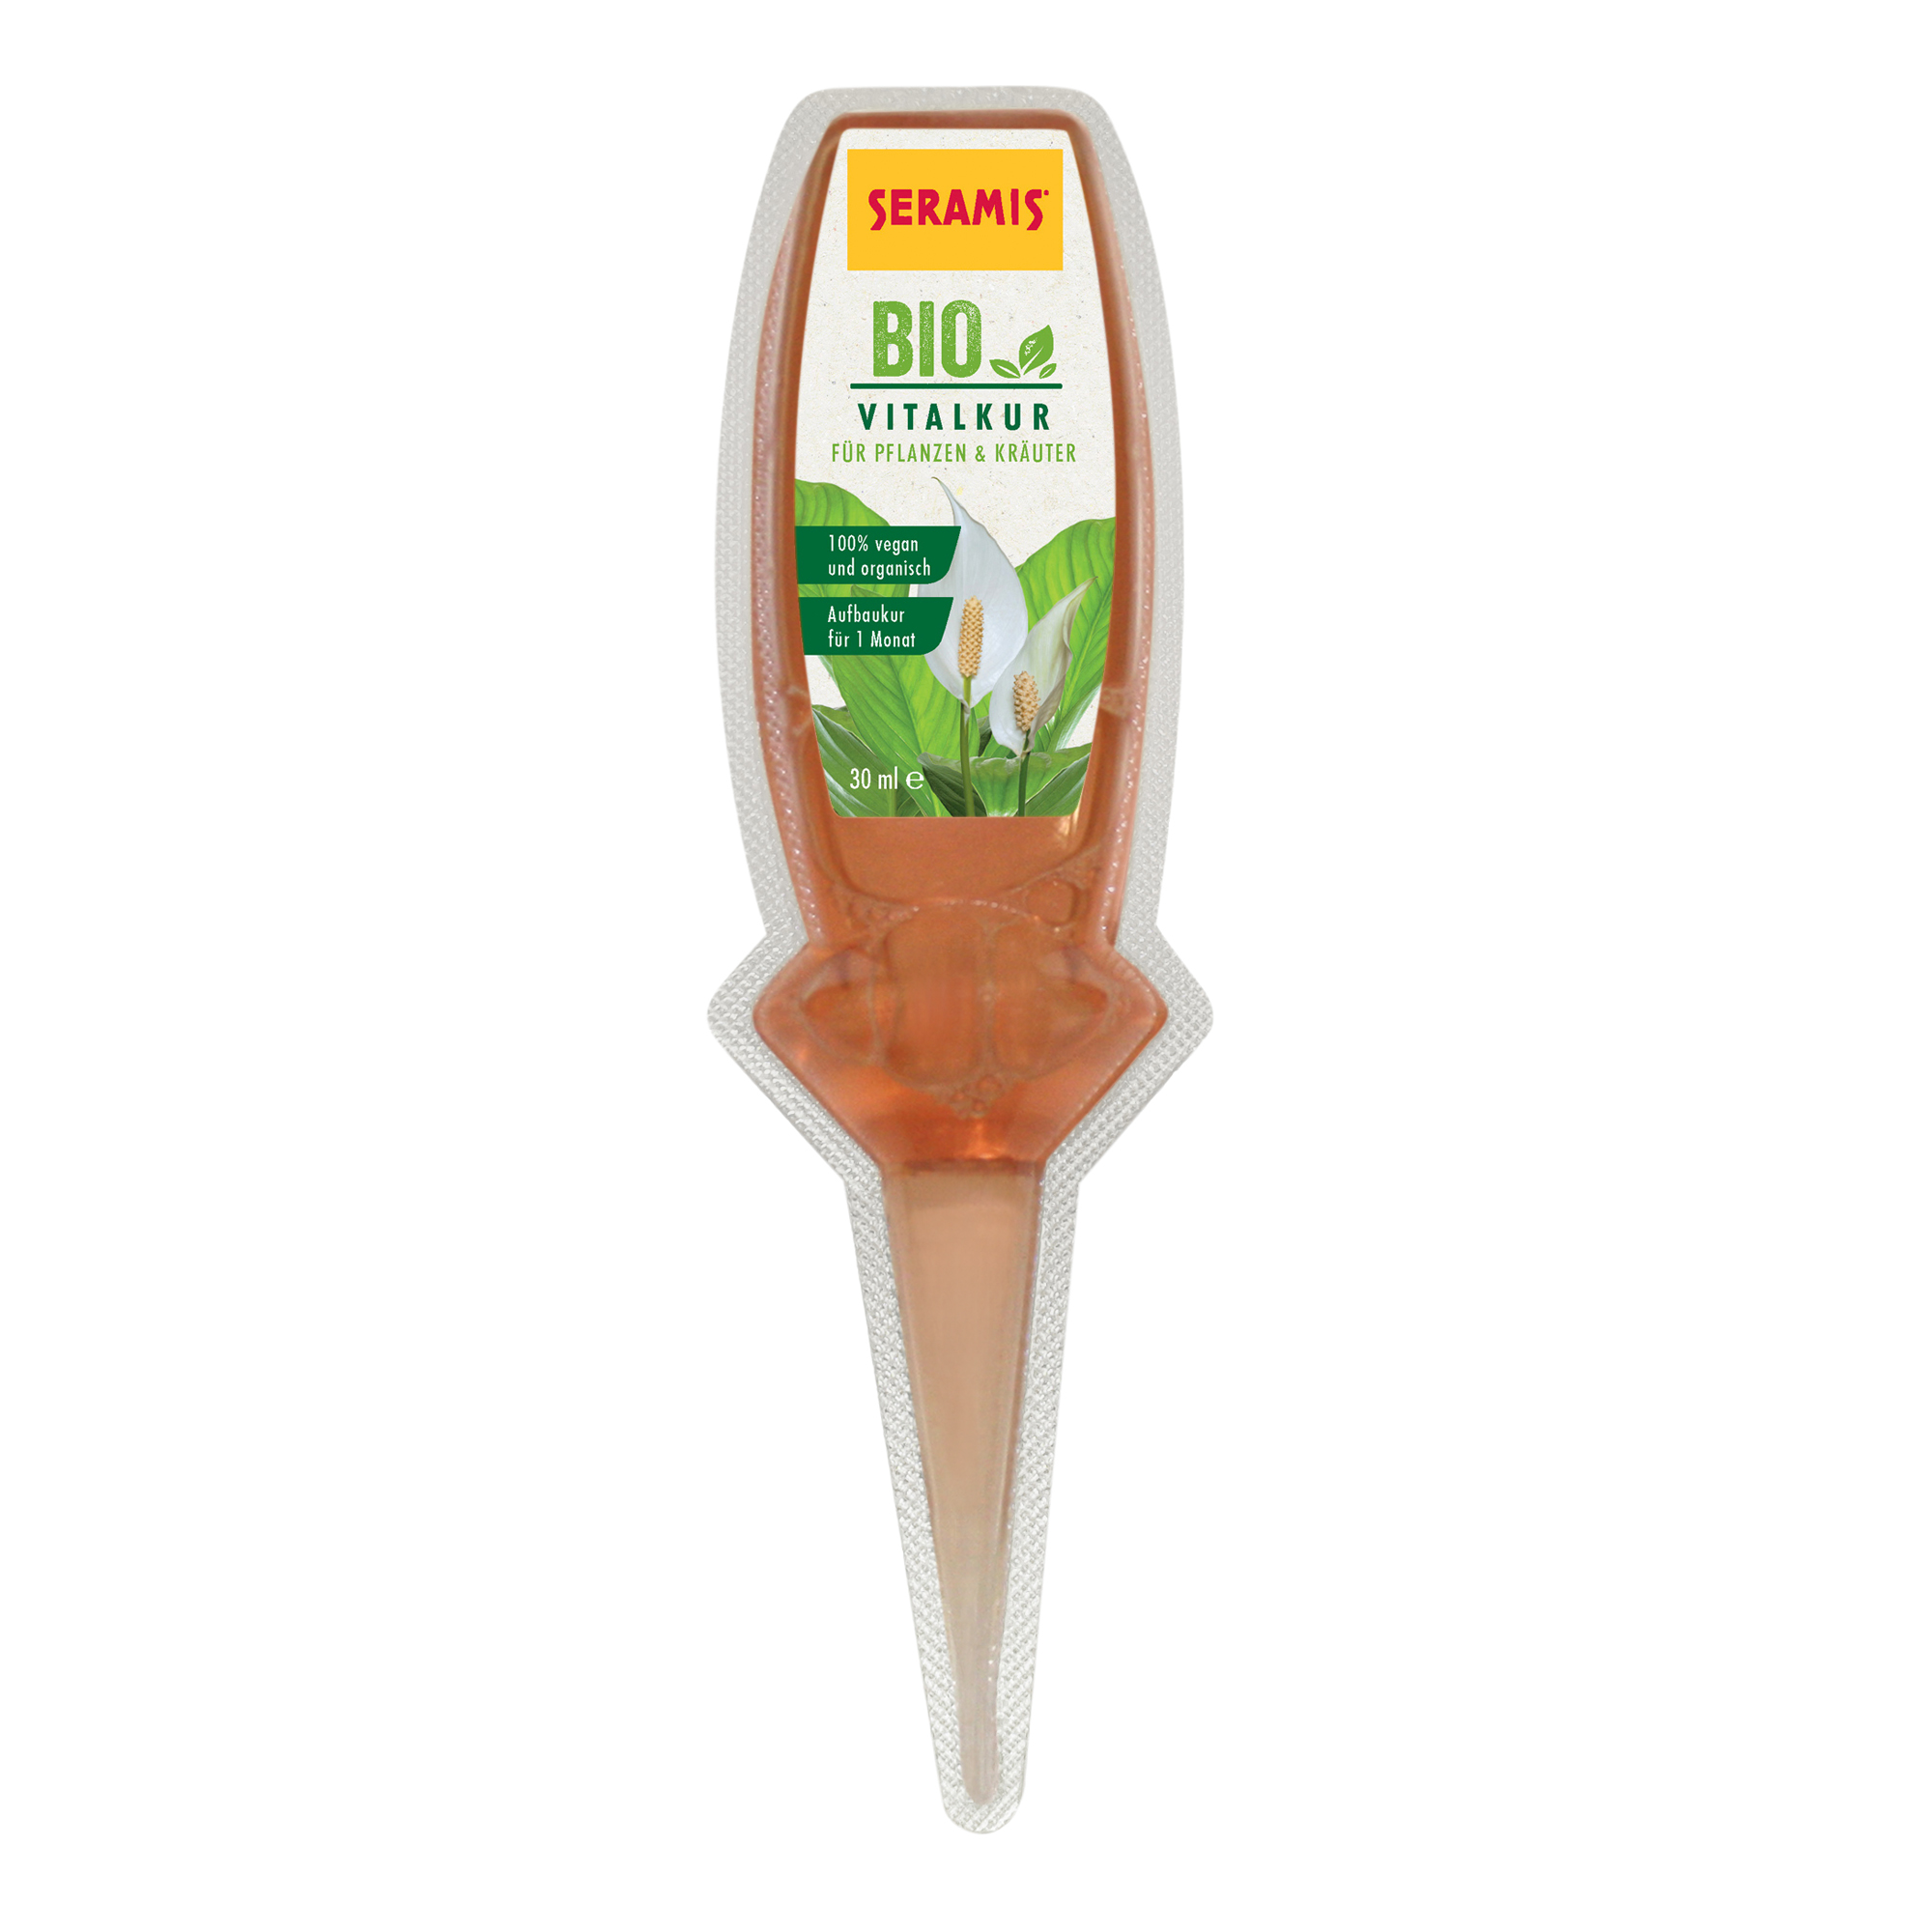 Bio-Vitalkur für Pflanzen und Kräuter 30 ml + product picture